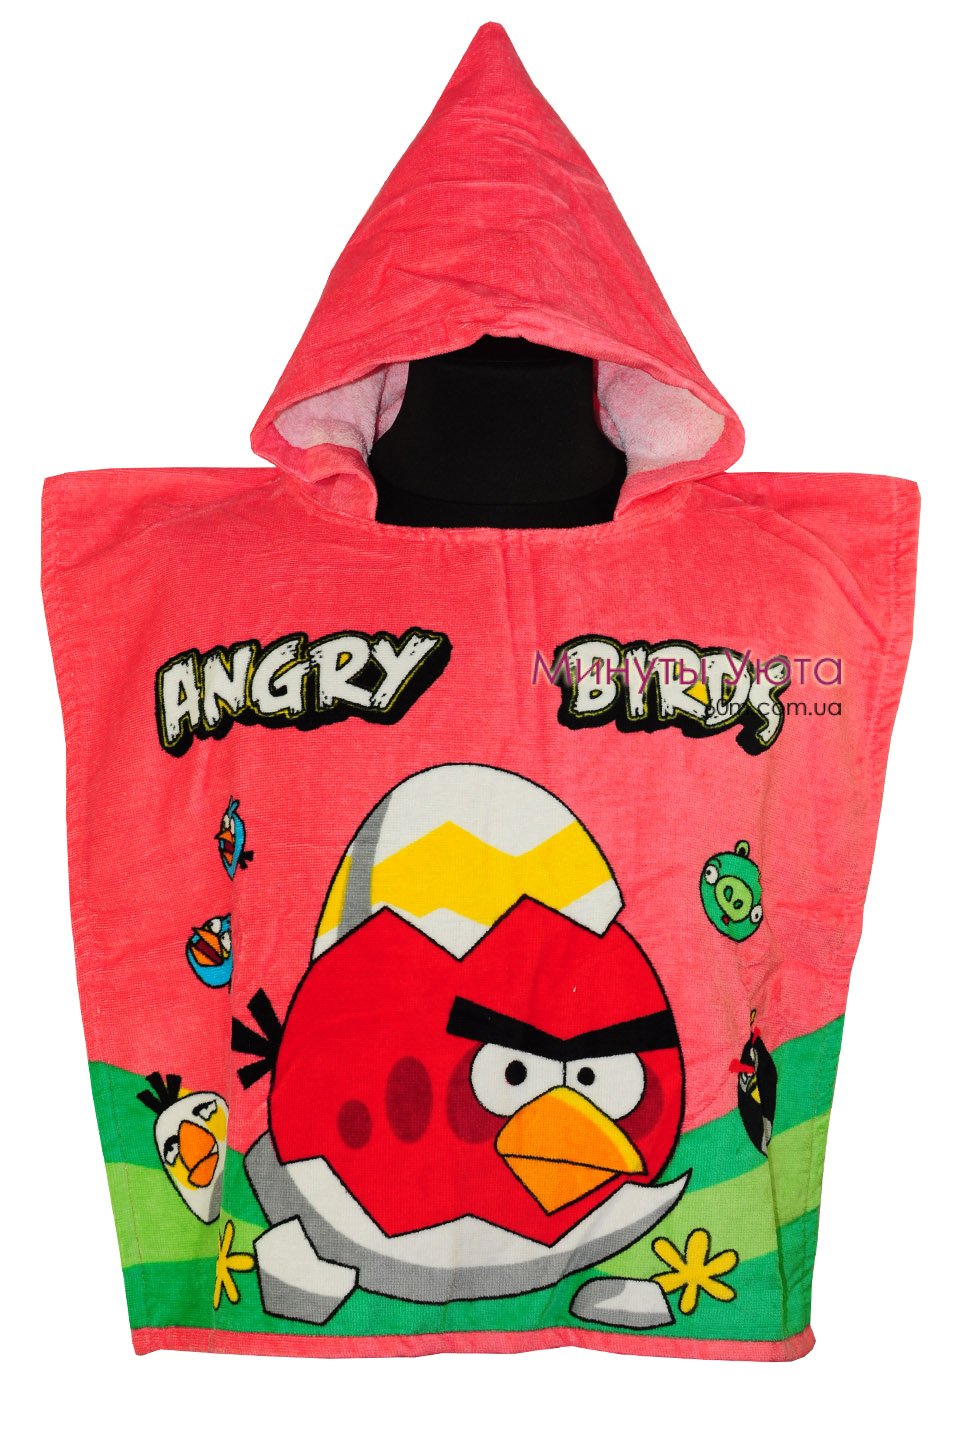 Пляжное полотенце-пончо Angry Birds 